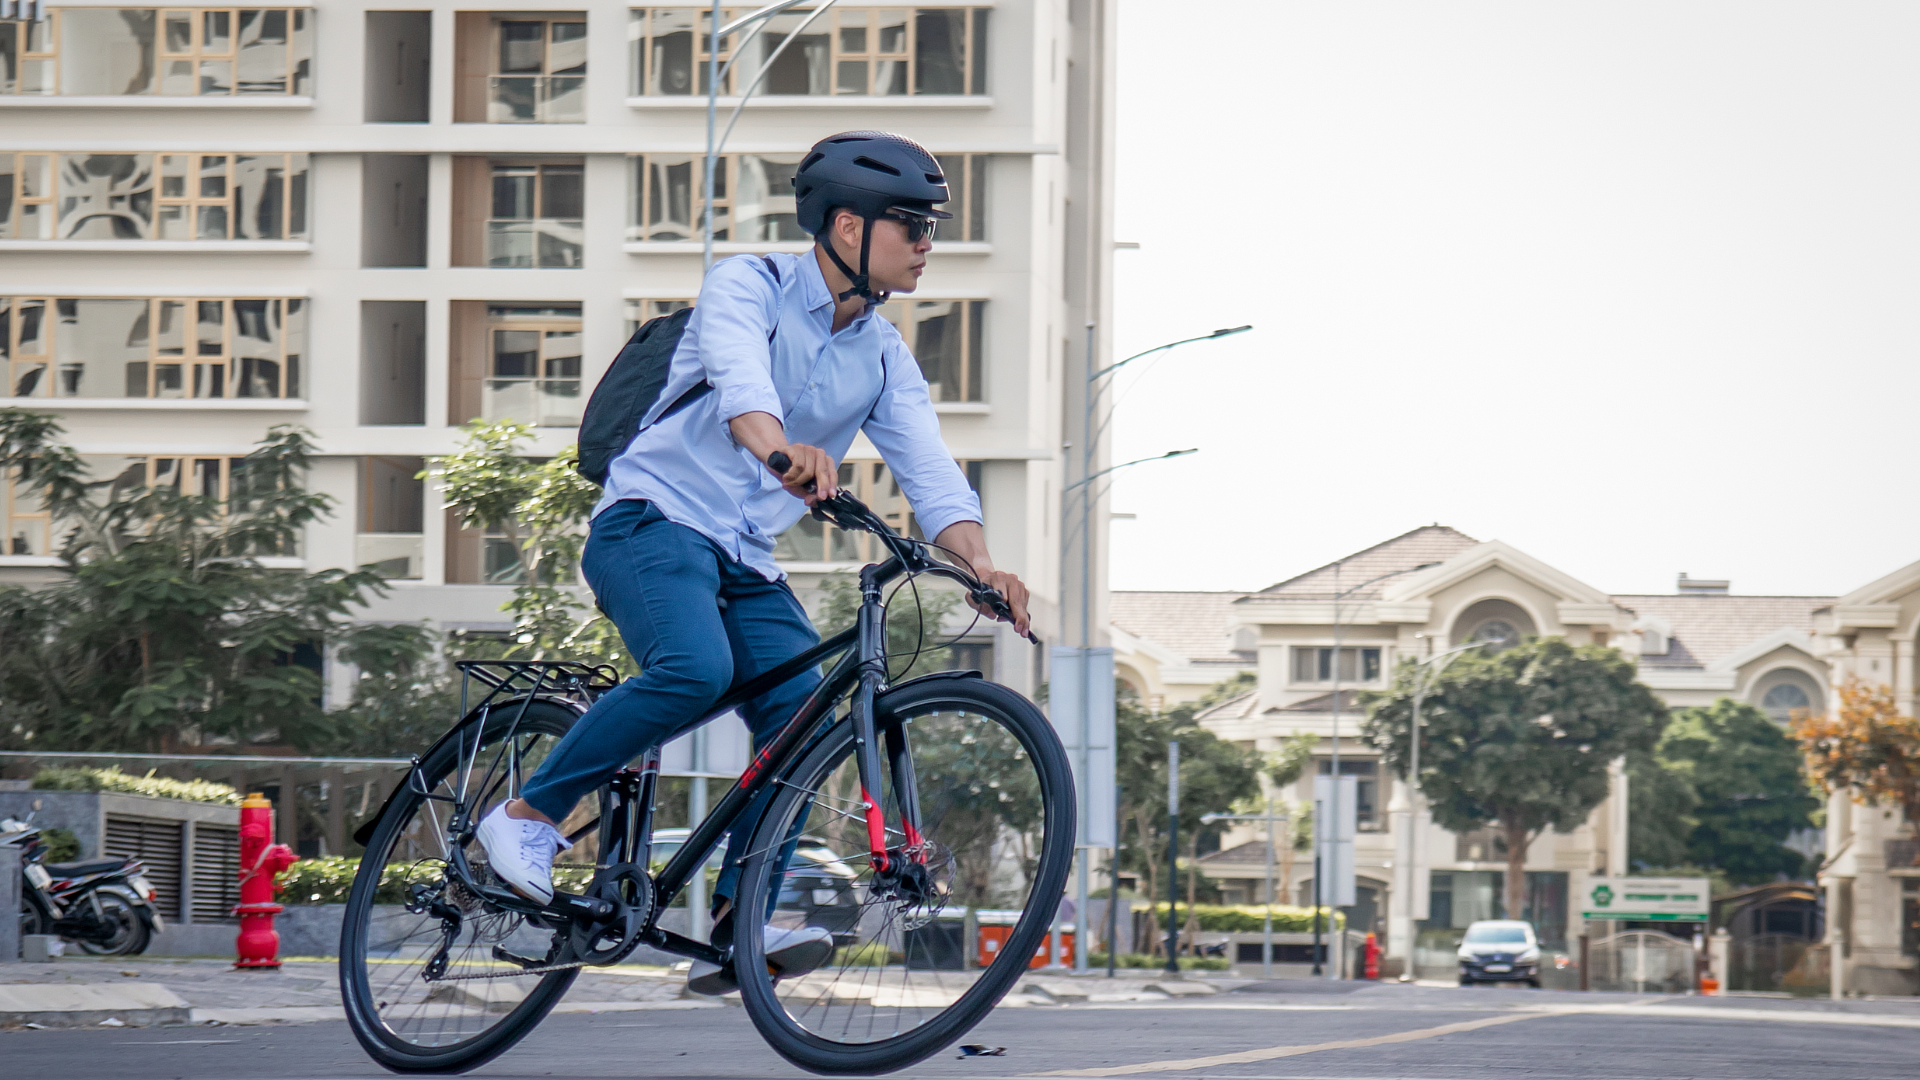 Pedala in sicurezza: i 5 consigli per evitare gli imprevisti in bici